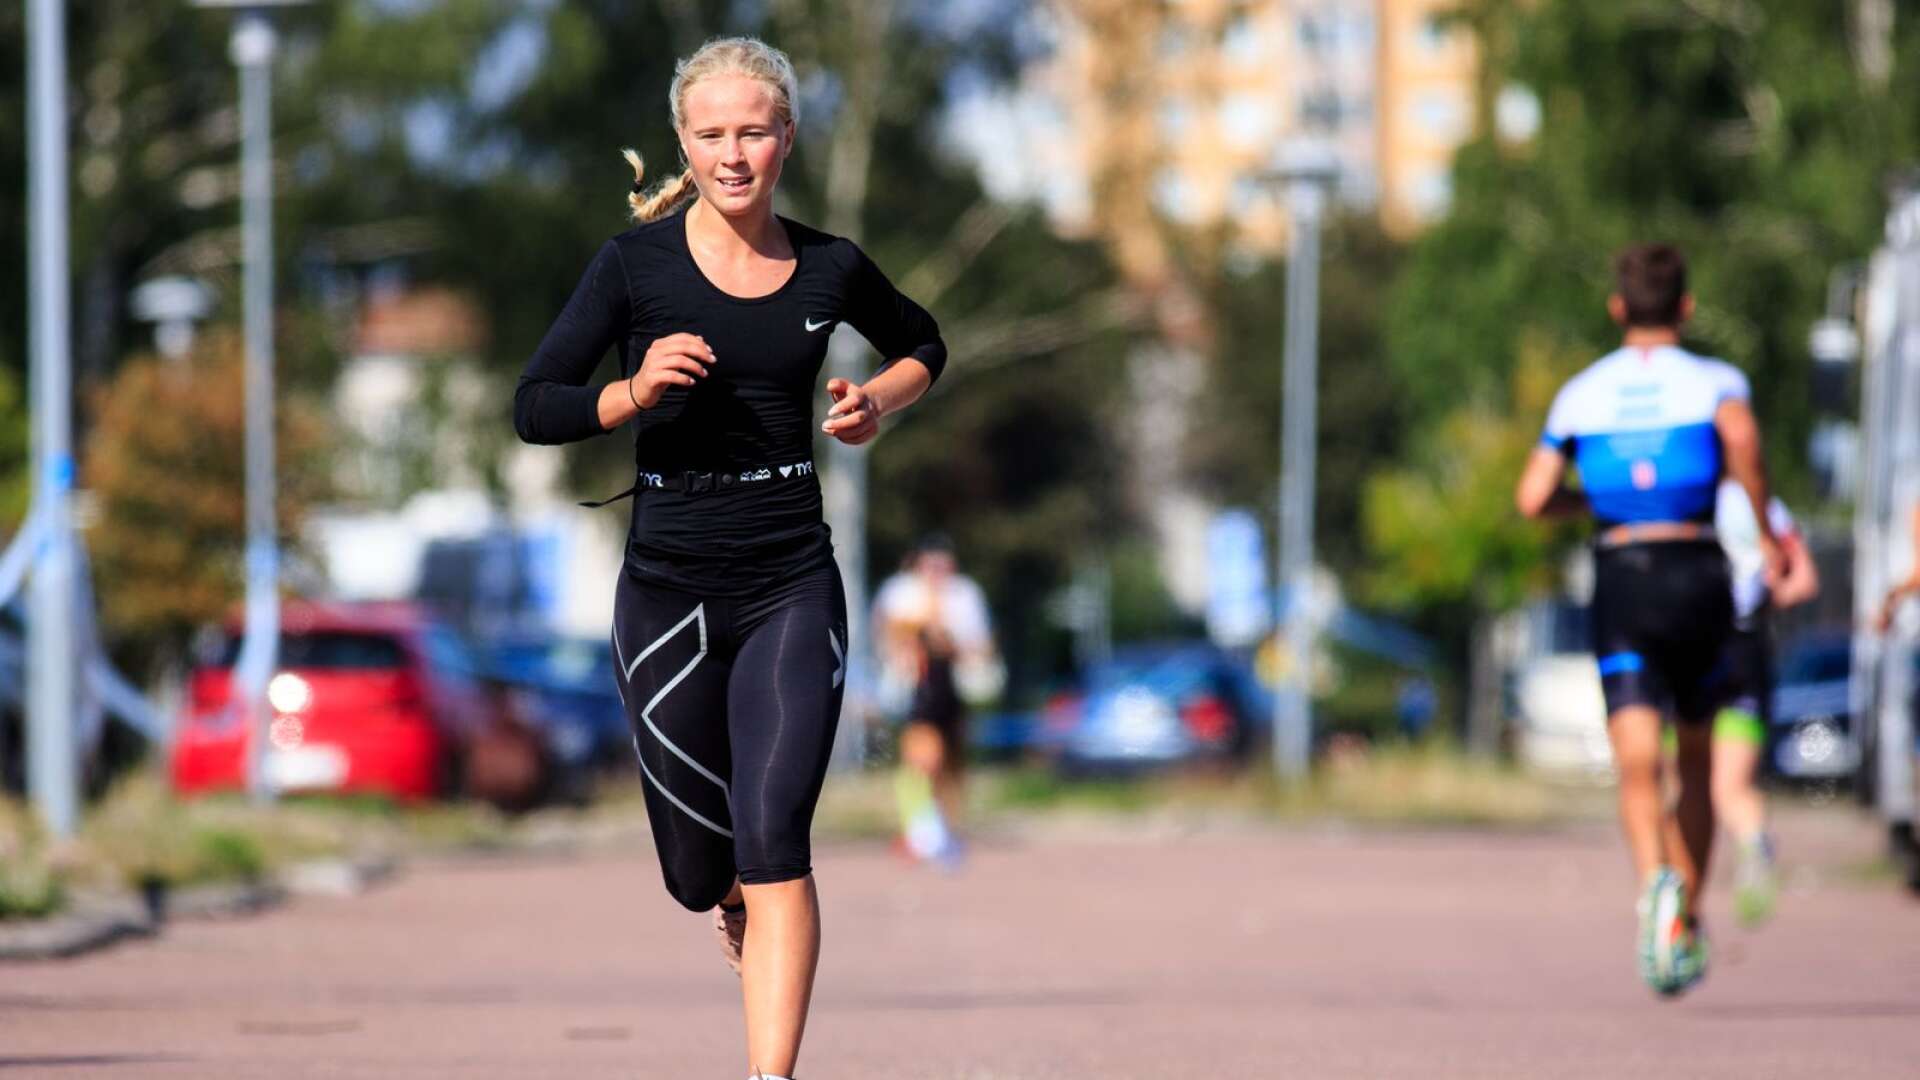 Hertzöga BK-spelaren Wilma Modig, 19, spelade inte helgens match på grund av Karlstad Triathlon. Tävlingen var hennes första som triatlet.